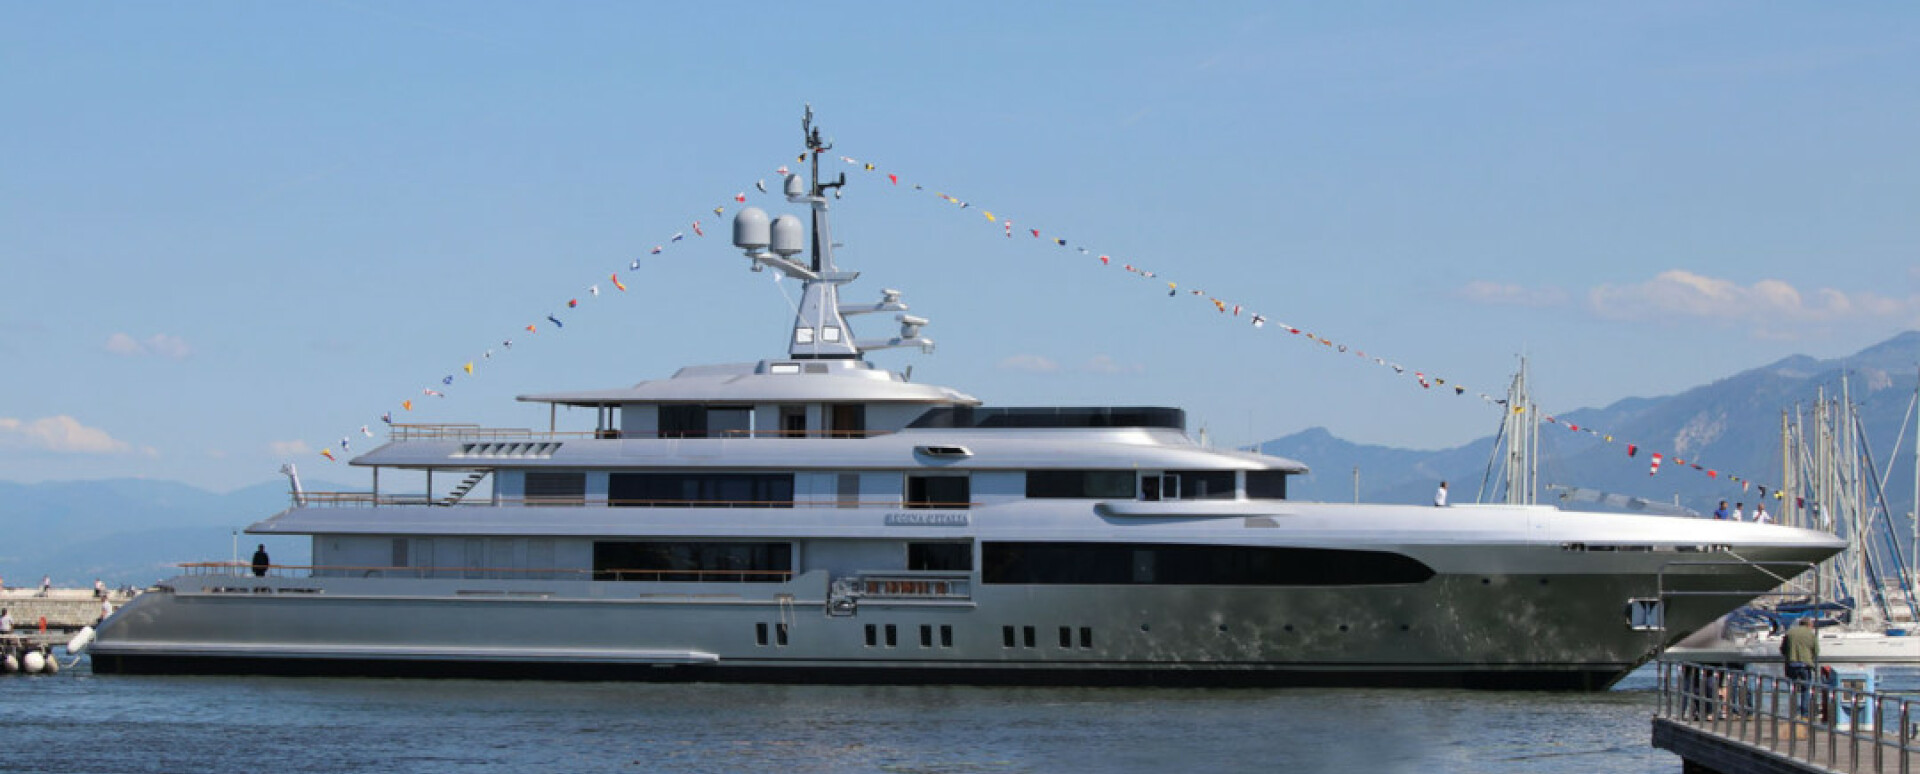                                                                                                     Codecasa launches new flagship – 65-metre Regina d’Italia
                                                                                            